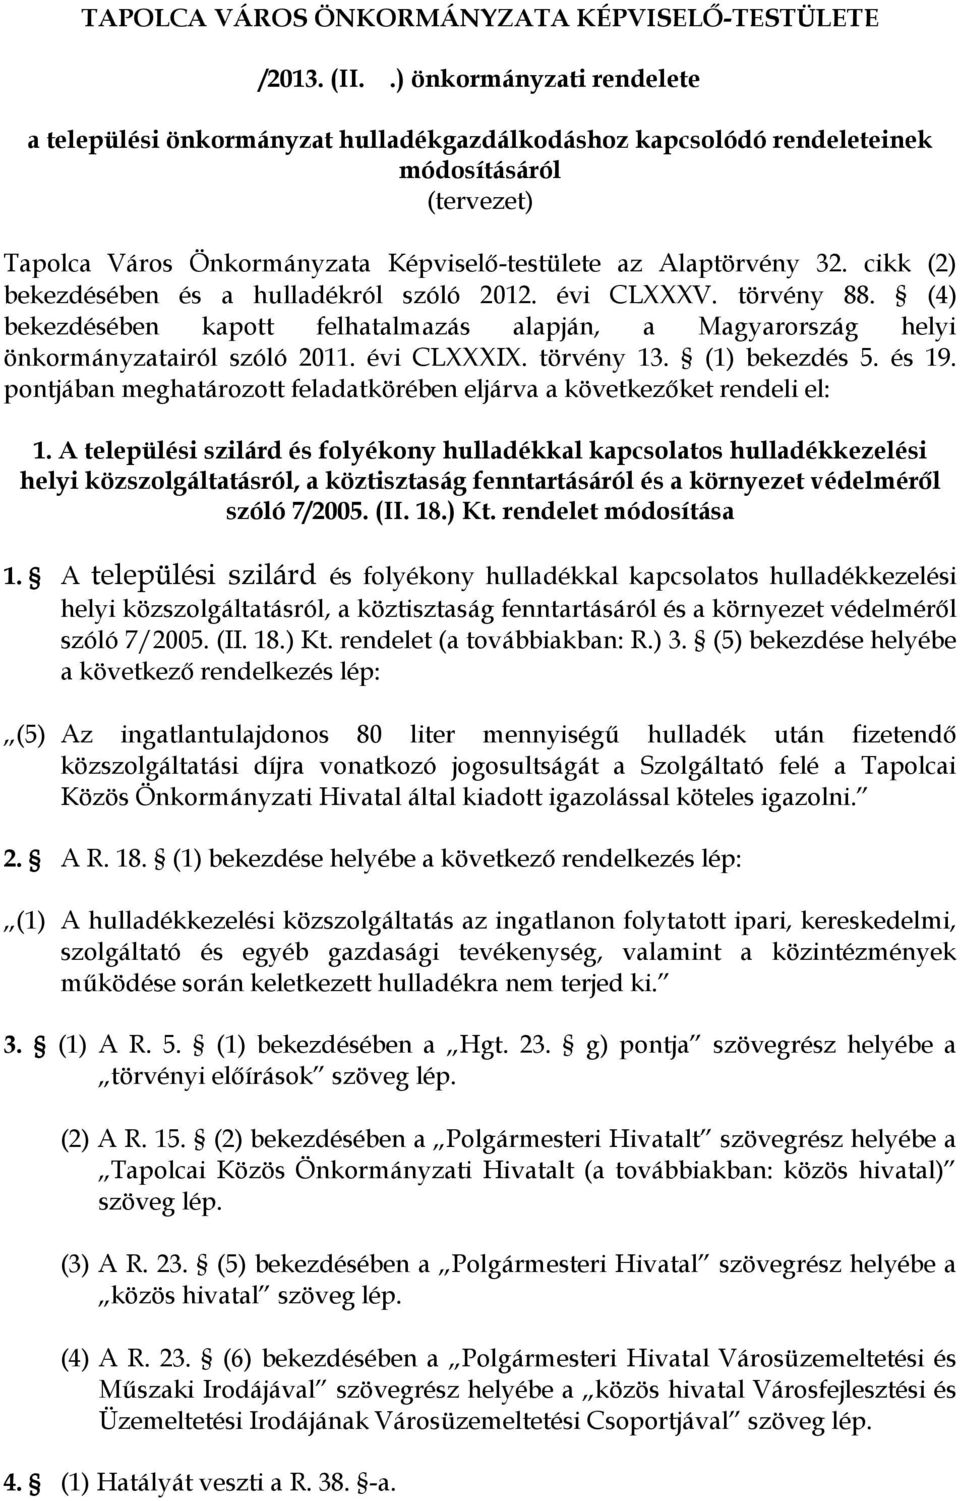 cikk (2) bekezdésében és a hulladékról szóló 2012. évi CLXXXV. törvény 88. (4) bekezdésében kapott felhatalmazás alapján, a Magyarország helyi önkormányzatairól szóló 2011. évi CLXXXIX. törvény 13.